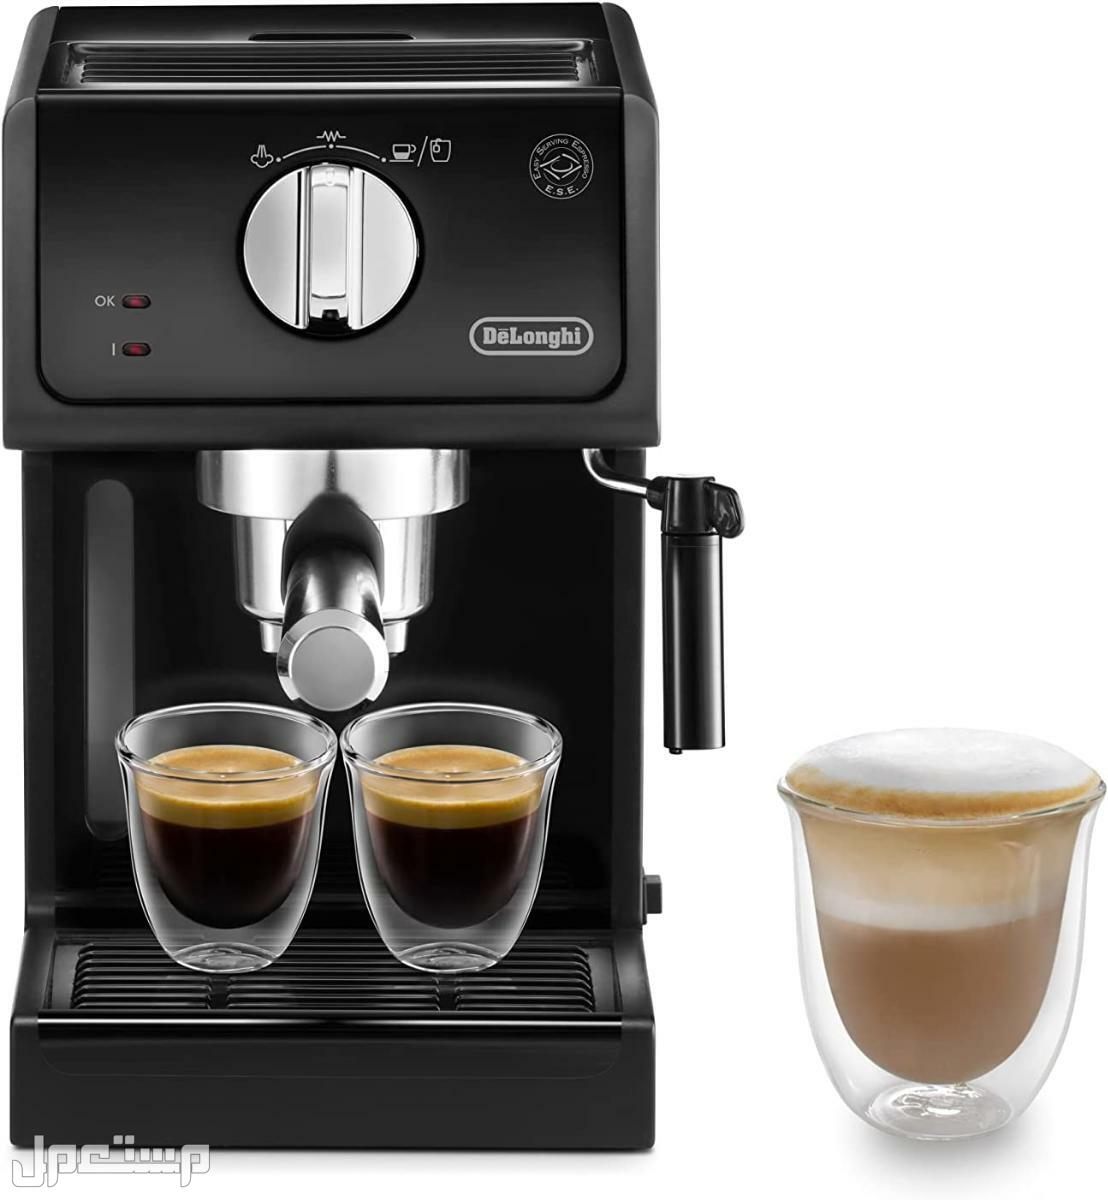 عيوب ومميزات ومواصفات وسعر ماكينة قهوة ديلونجى ديديكا في العراق لماذا عليك شراء ماكينة قهوة ديلونجي ديديكا ؟